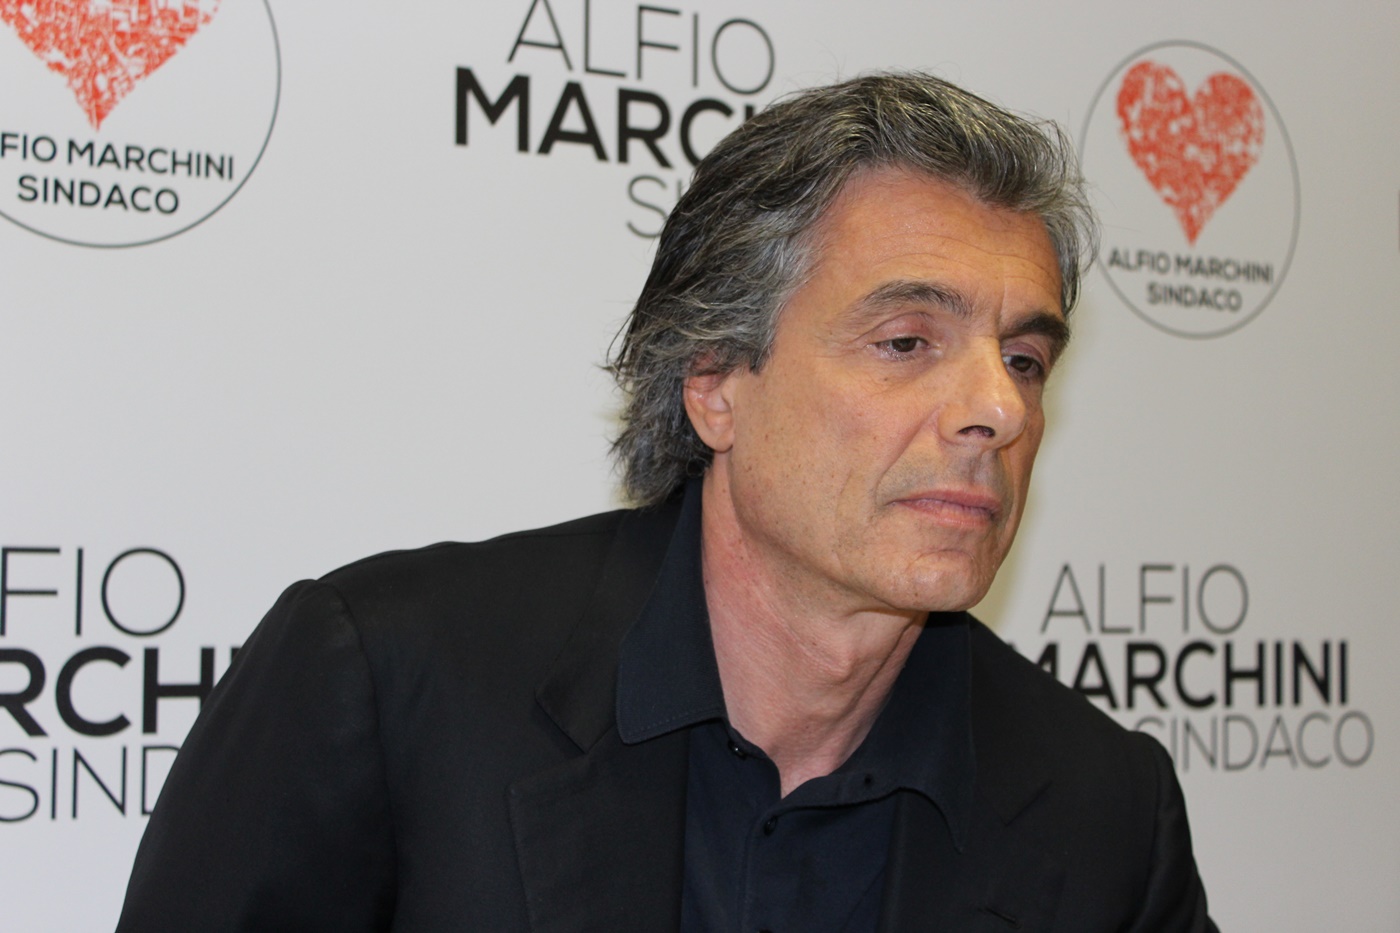 Alfio Marchini